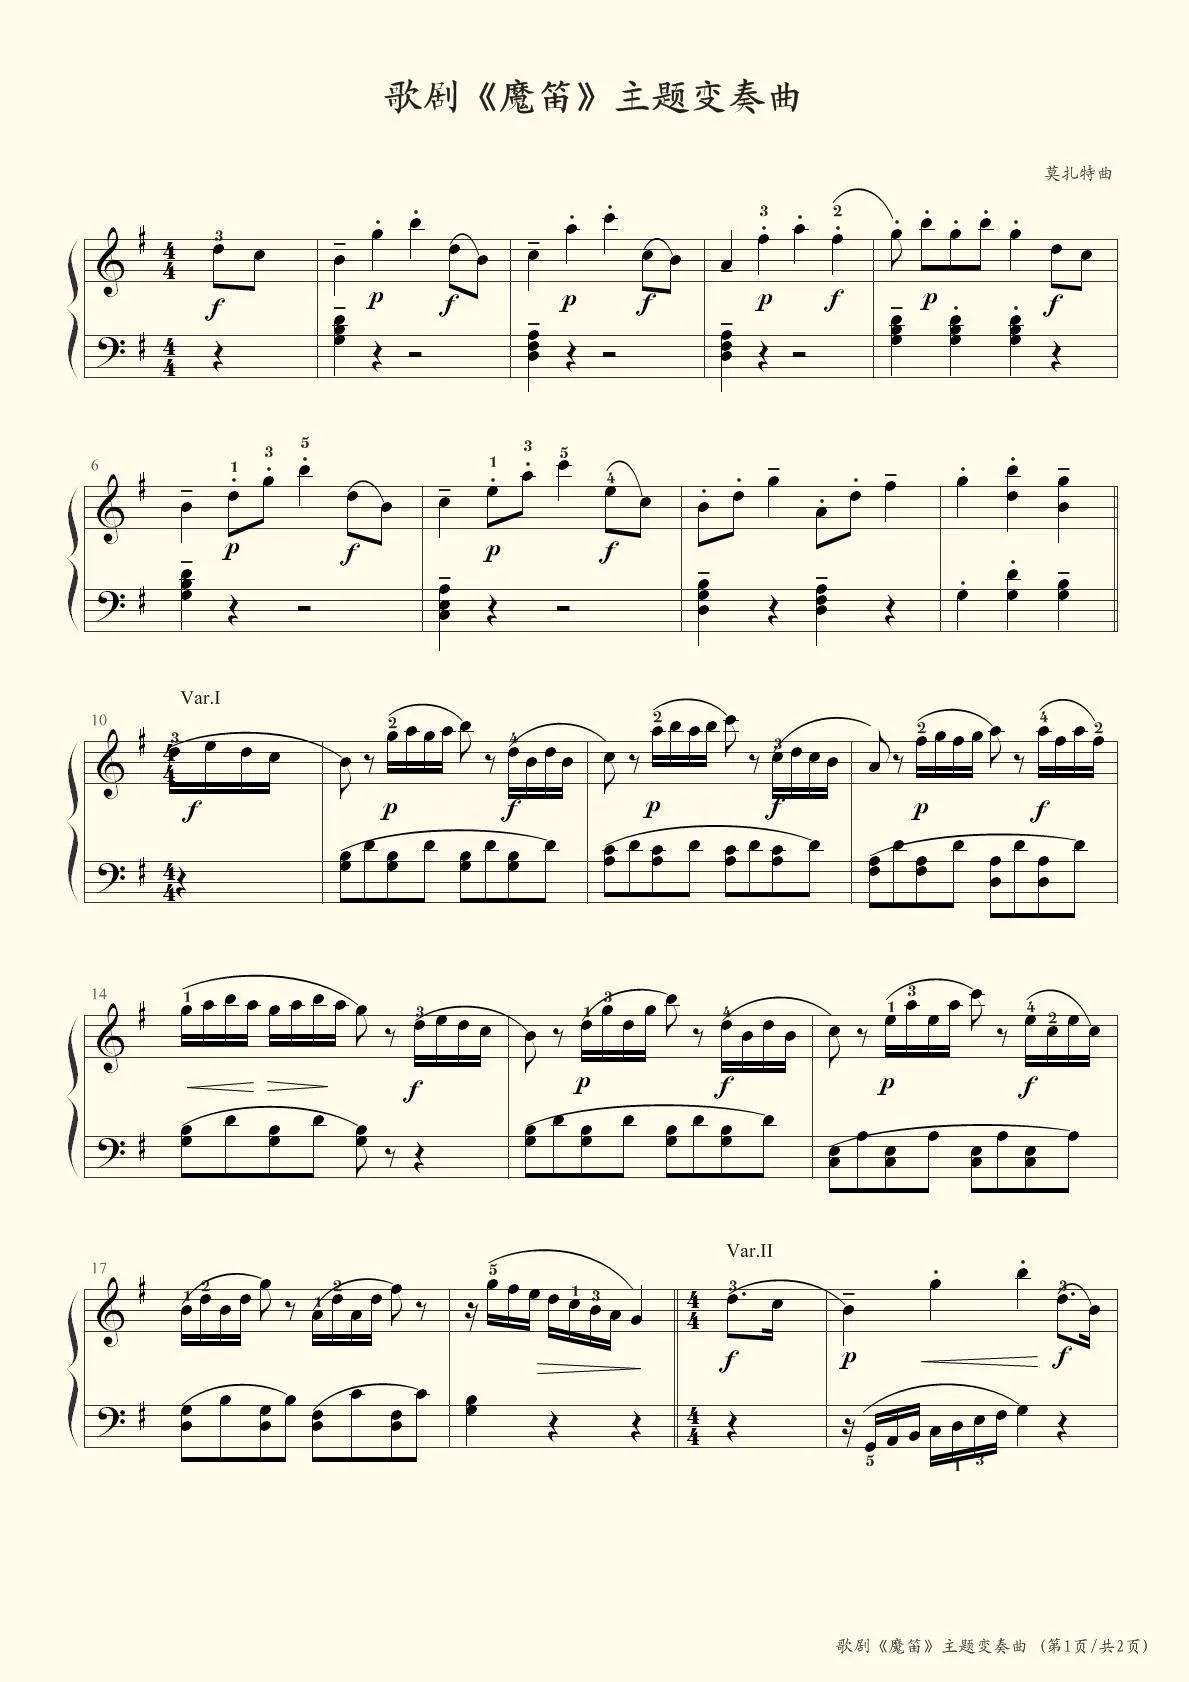 《魔笛》主题变奏曲－娱乐版 钢琴曲谱，于斯课堂精心出品。于斯曲谱大全，钢琴谱，简谱，五线谱尽在其中。